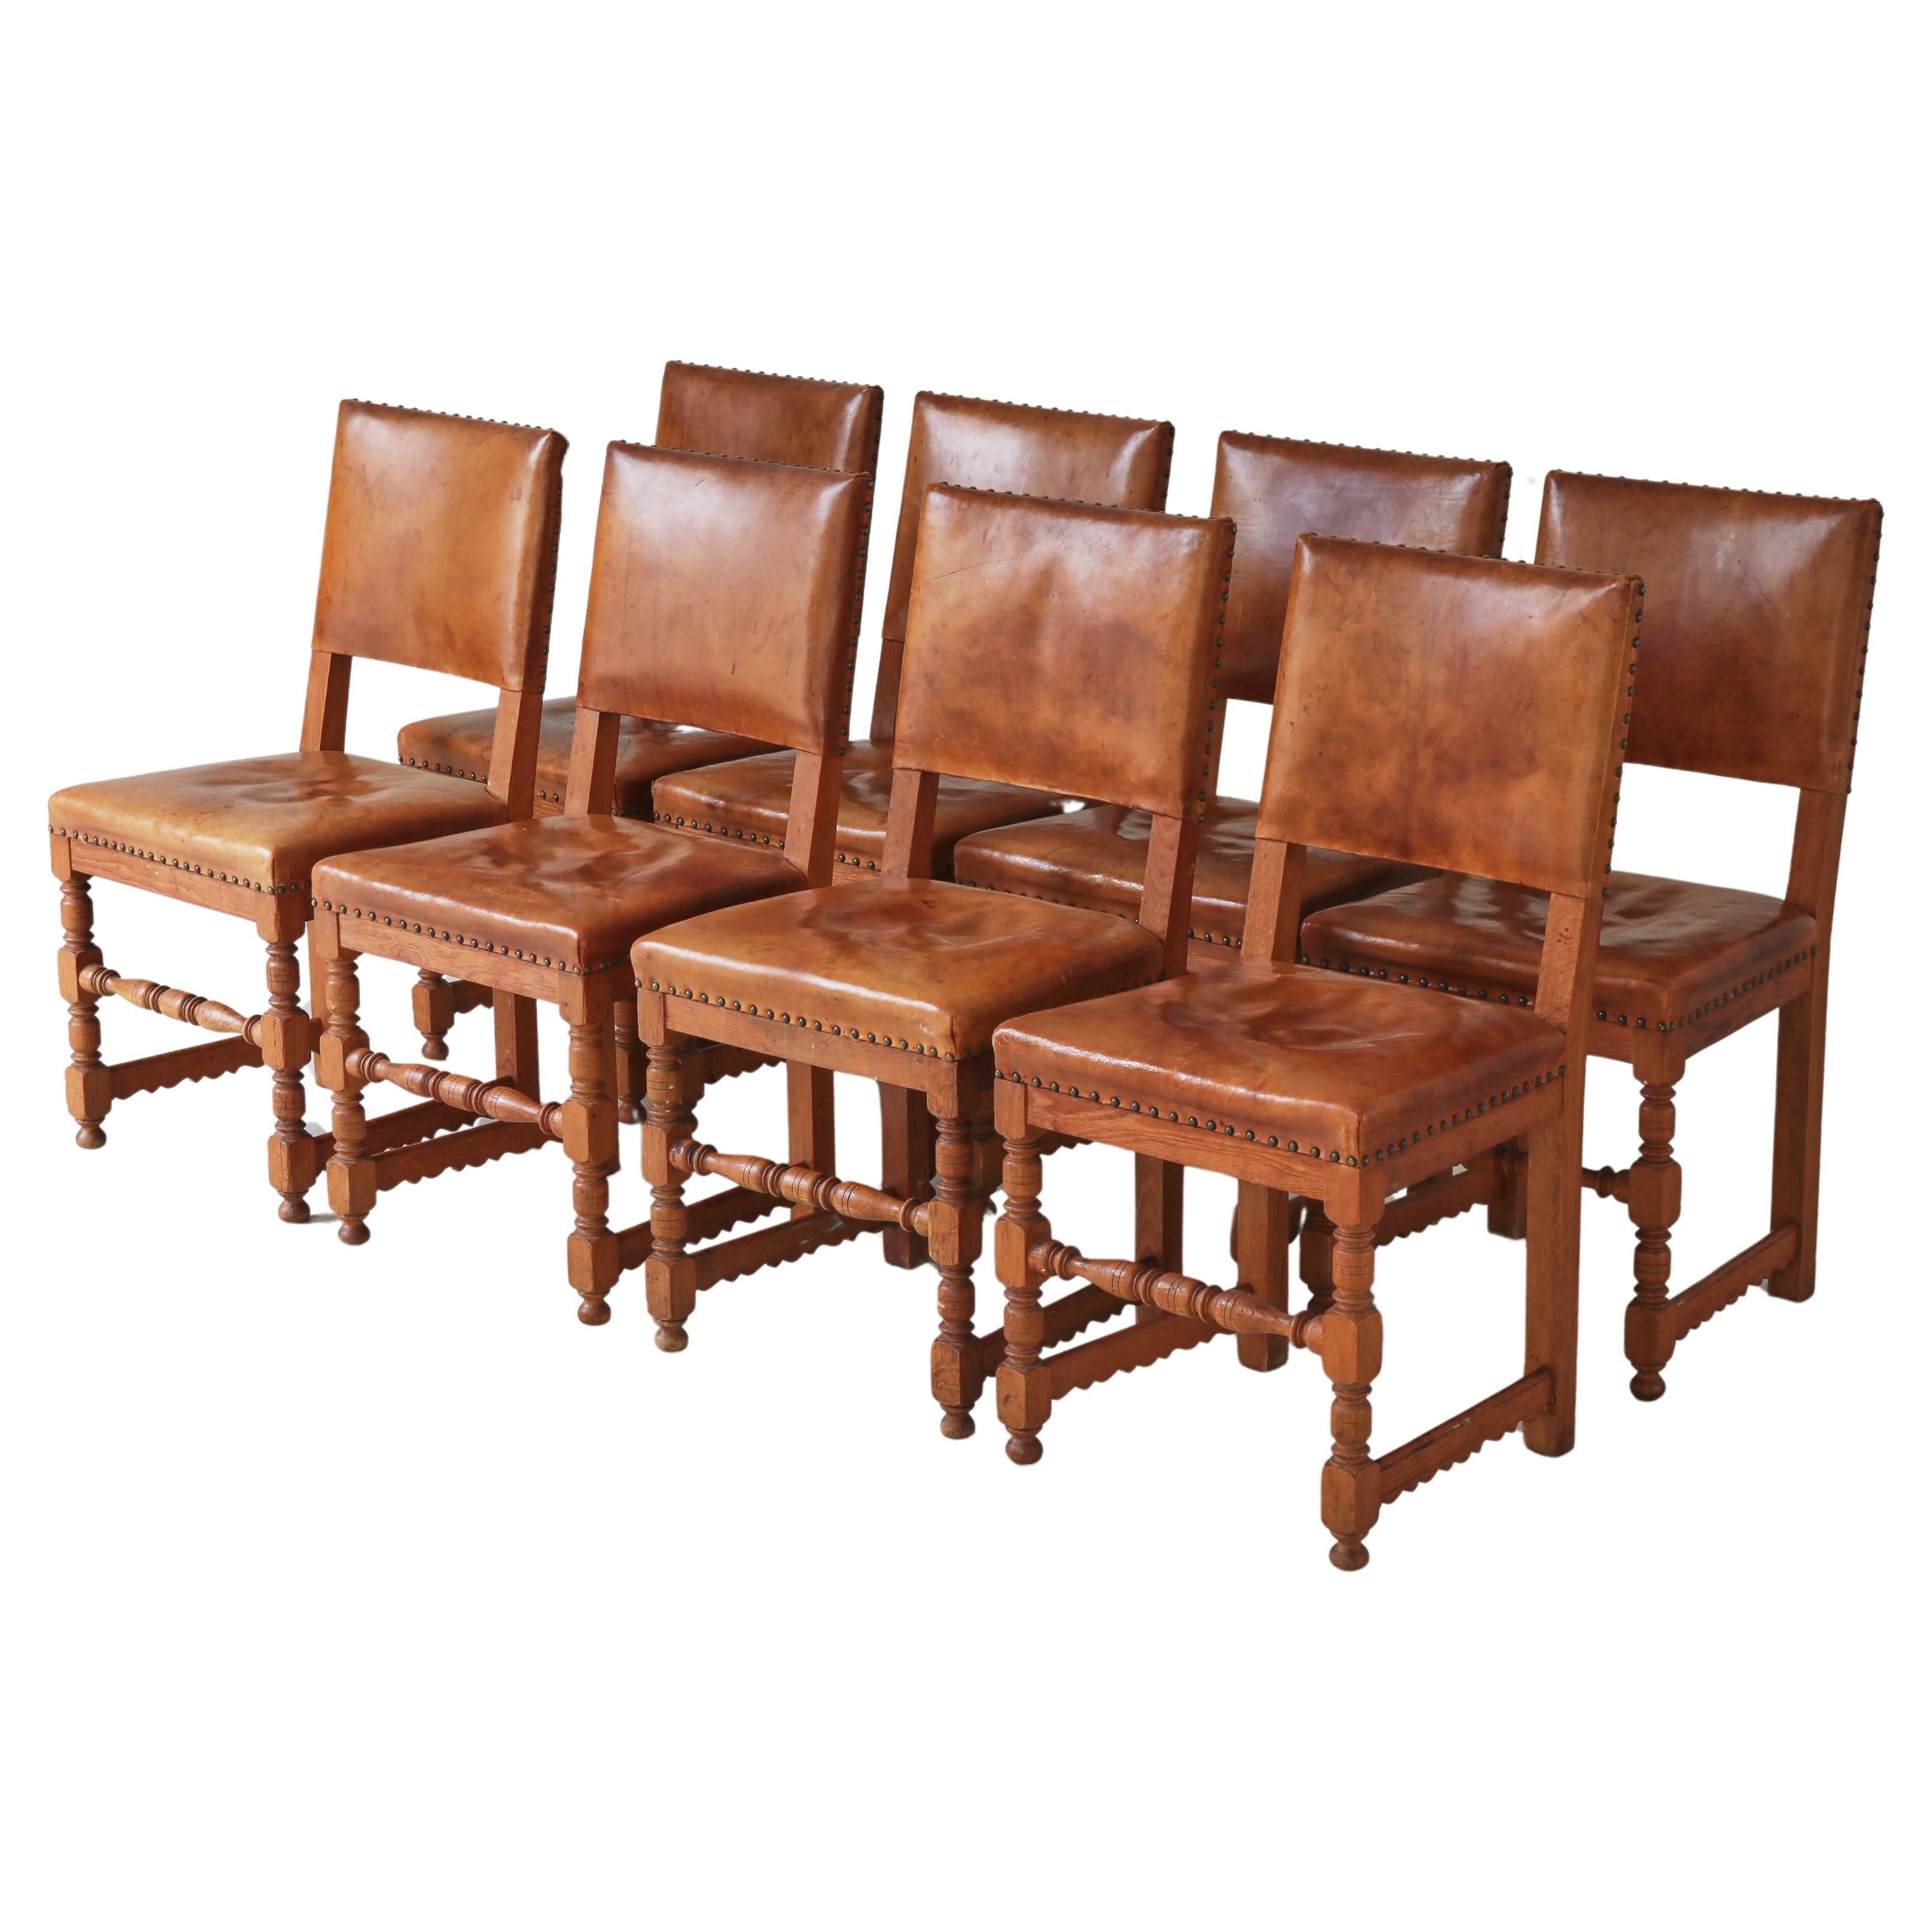 Master Cabinetmaker Lars Møller Dining Chairs in Oak & Leather, Denmark, 1935 For Sale